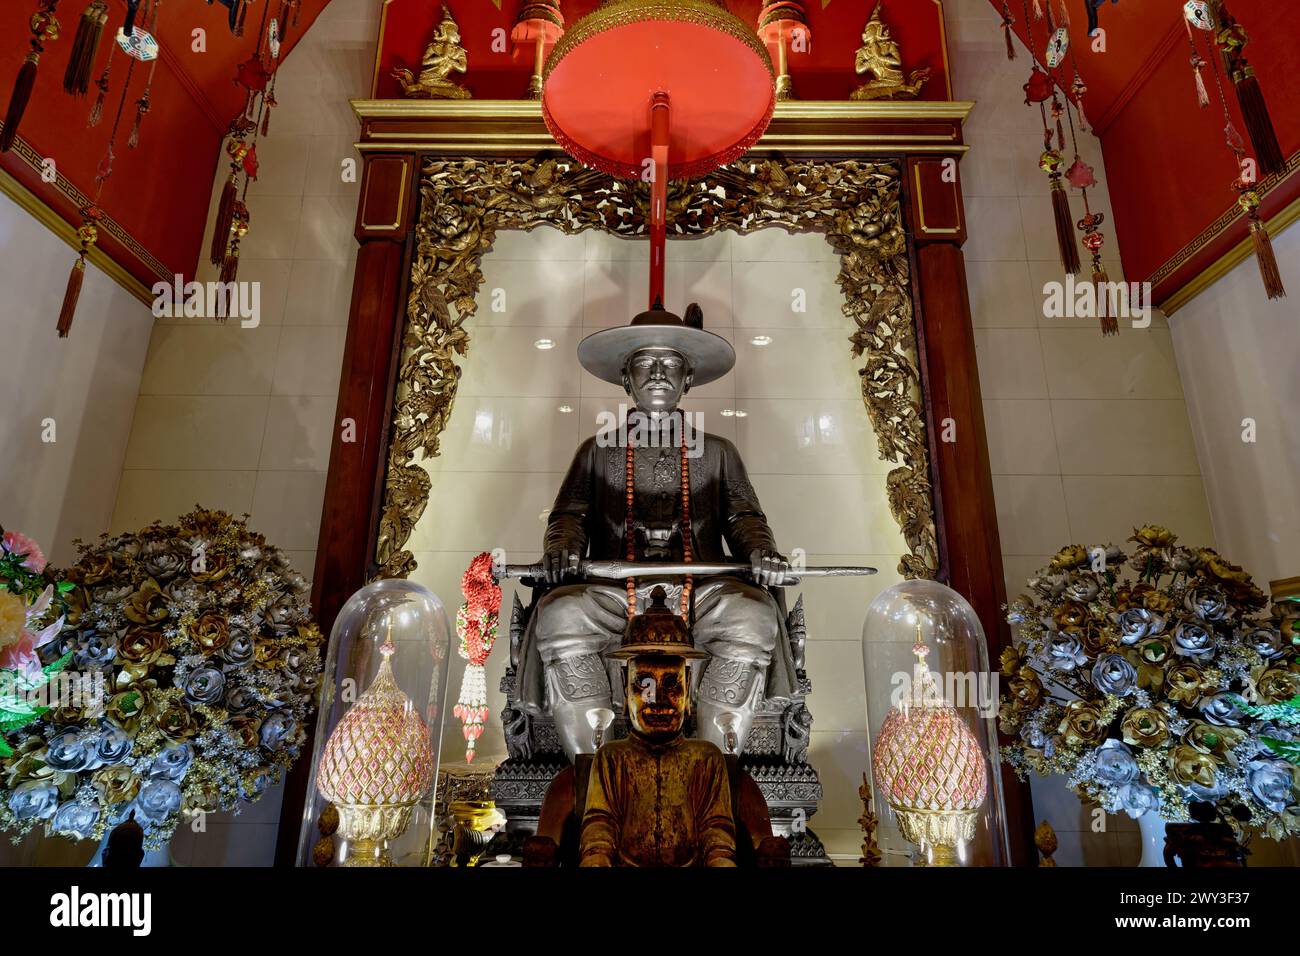 Statue du roi Taksin le Grand (1734-82), roi du Siam avec la capitale Thonburi ; au sanctuaire Somdet Phra Chao Taksin, Banglamphu, Bangkok, Thaïlande Banque D'Images